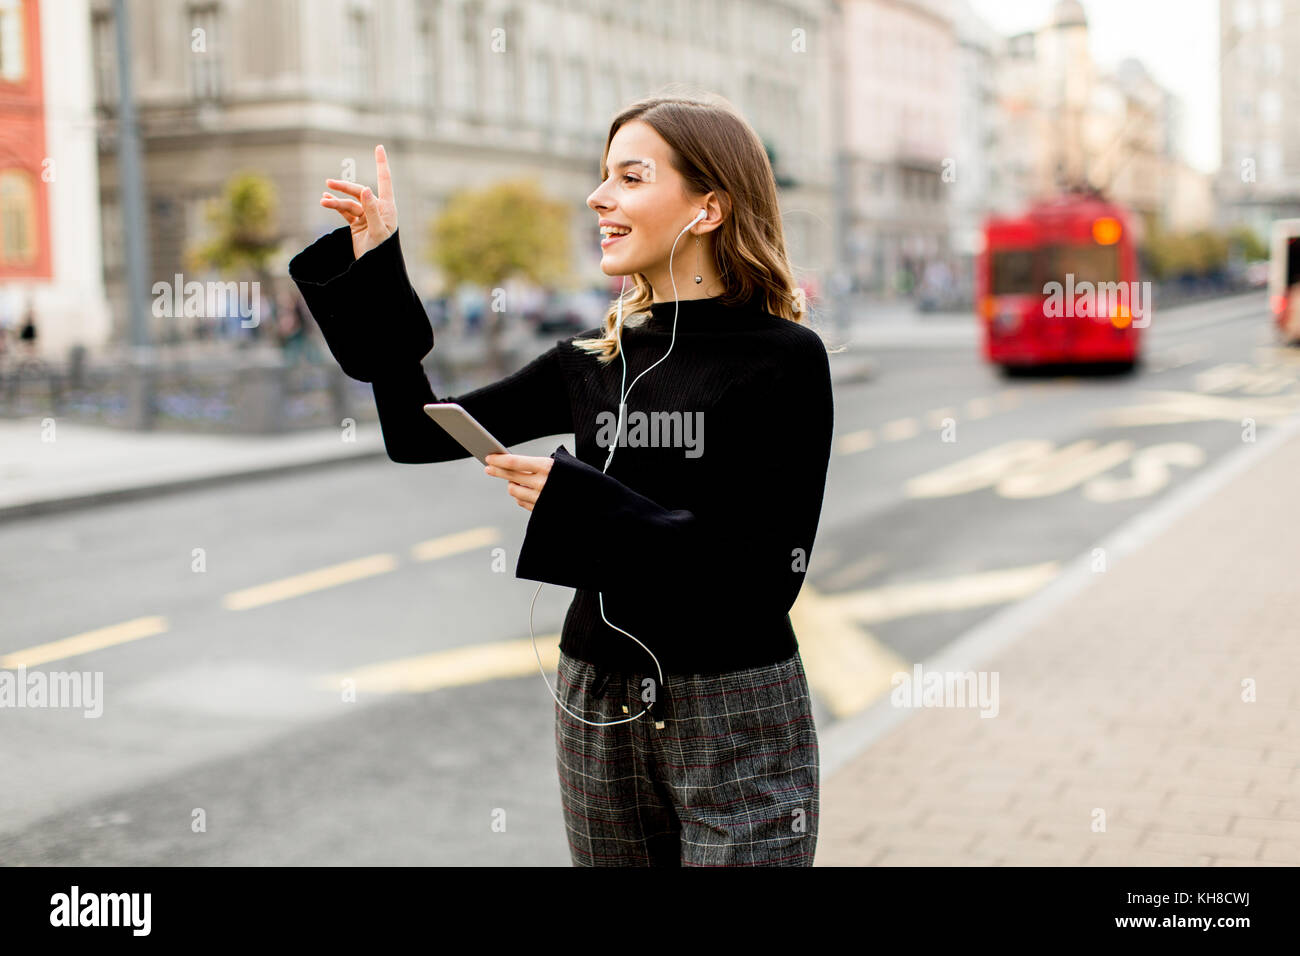 Mujer joven esperando un taxi o autobús en la calle en la ciudad Foto de stock